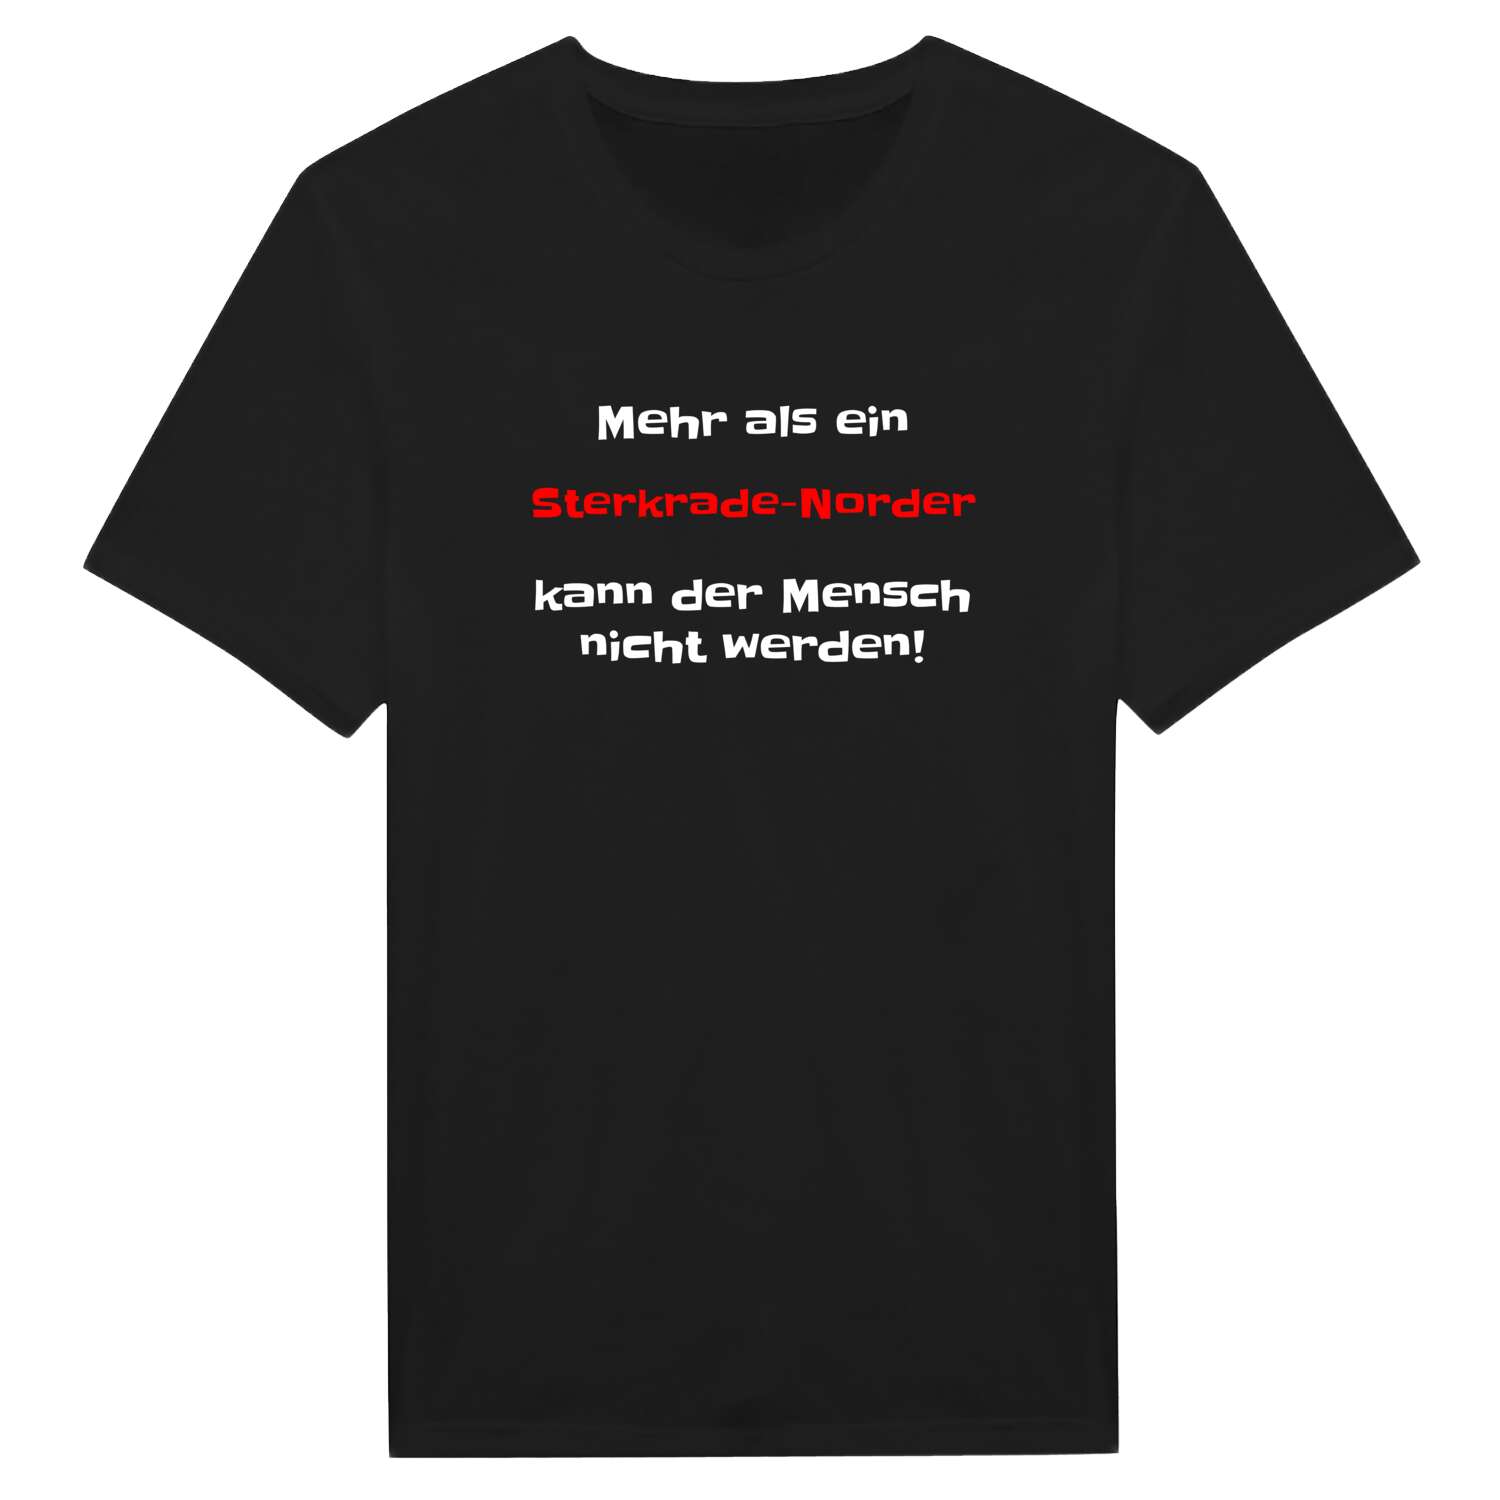 Sterkrade-Nord T-Shirt »Mehr als ein«